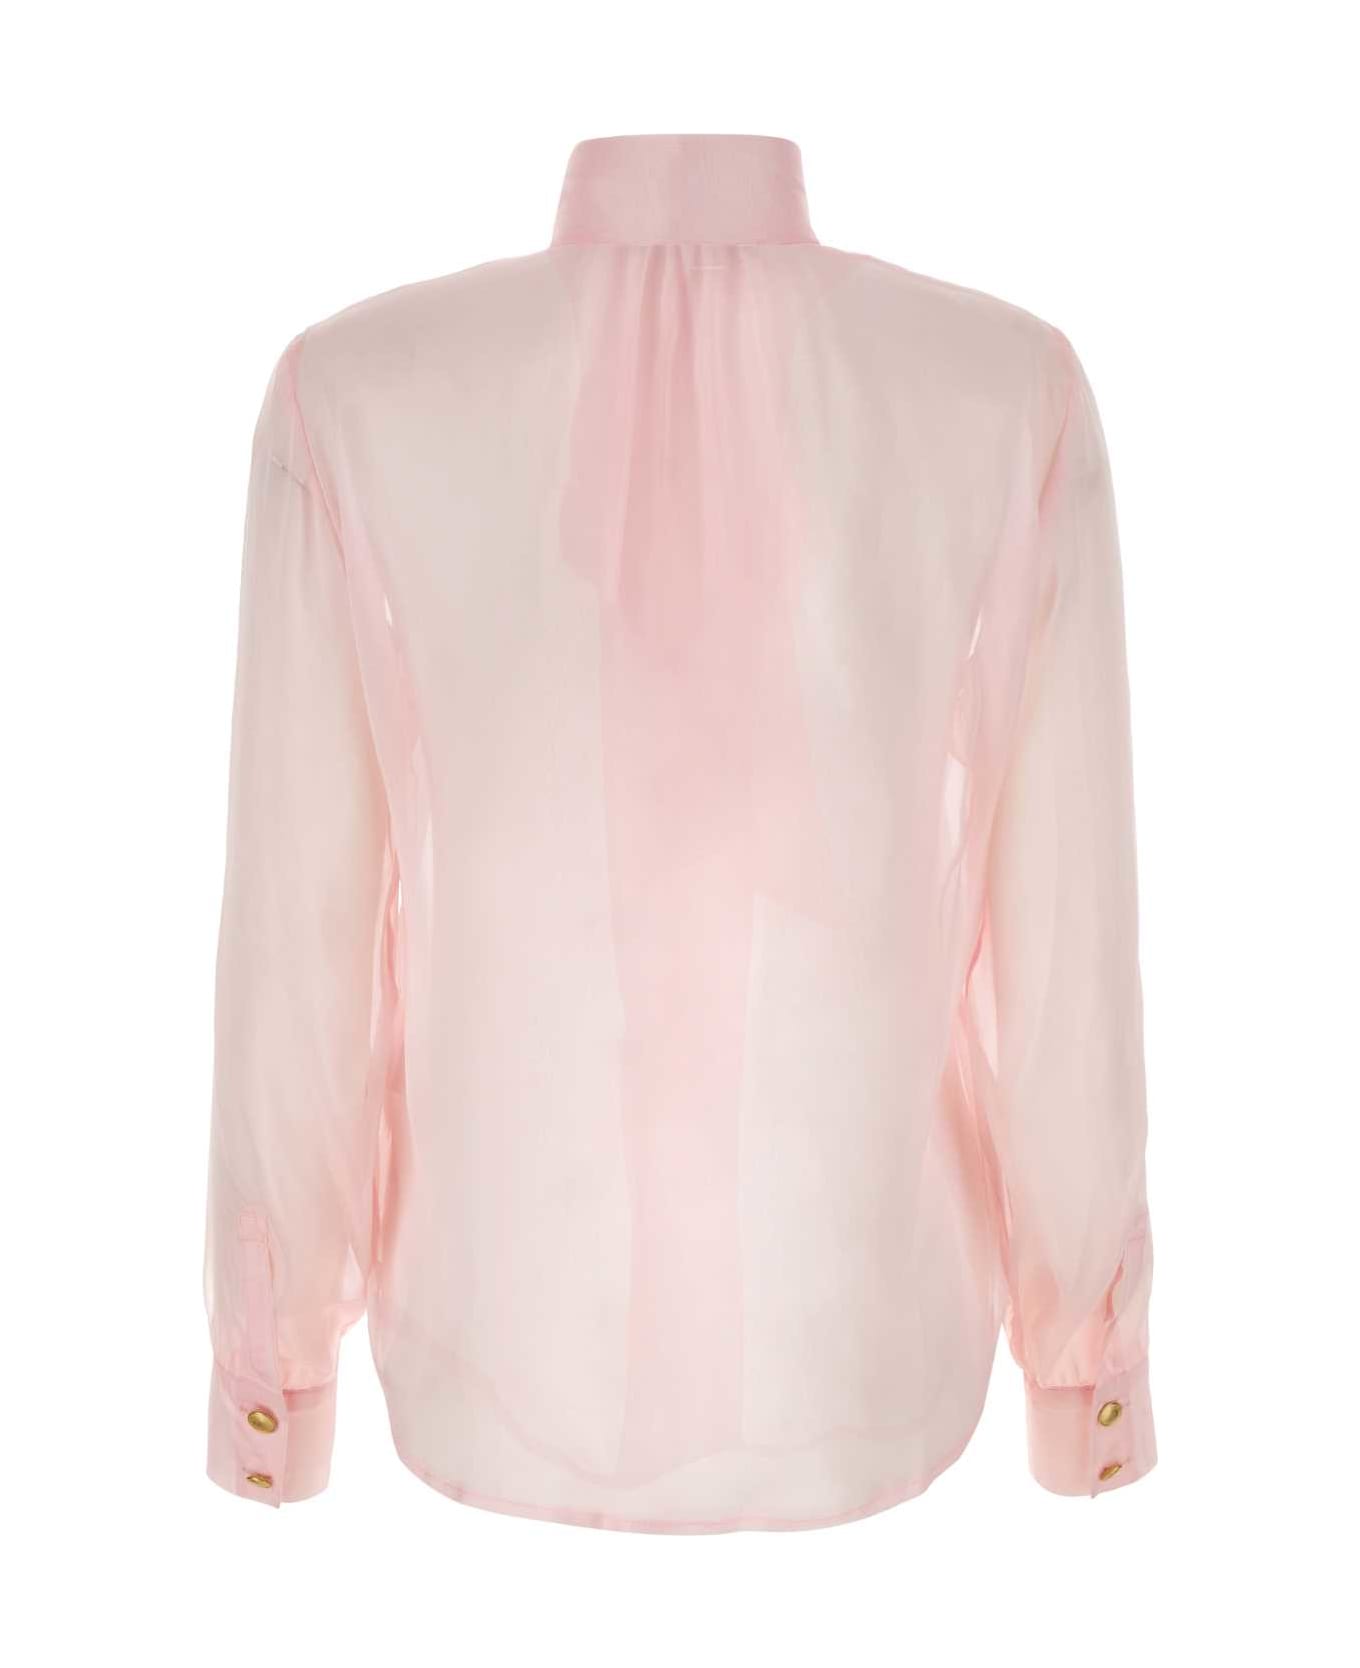 Hebe Studio Pink Chiffon Ava Shirt - PINK